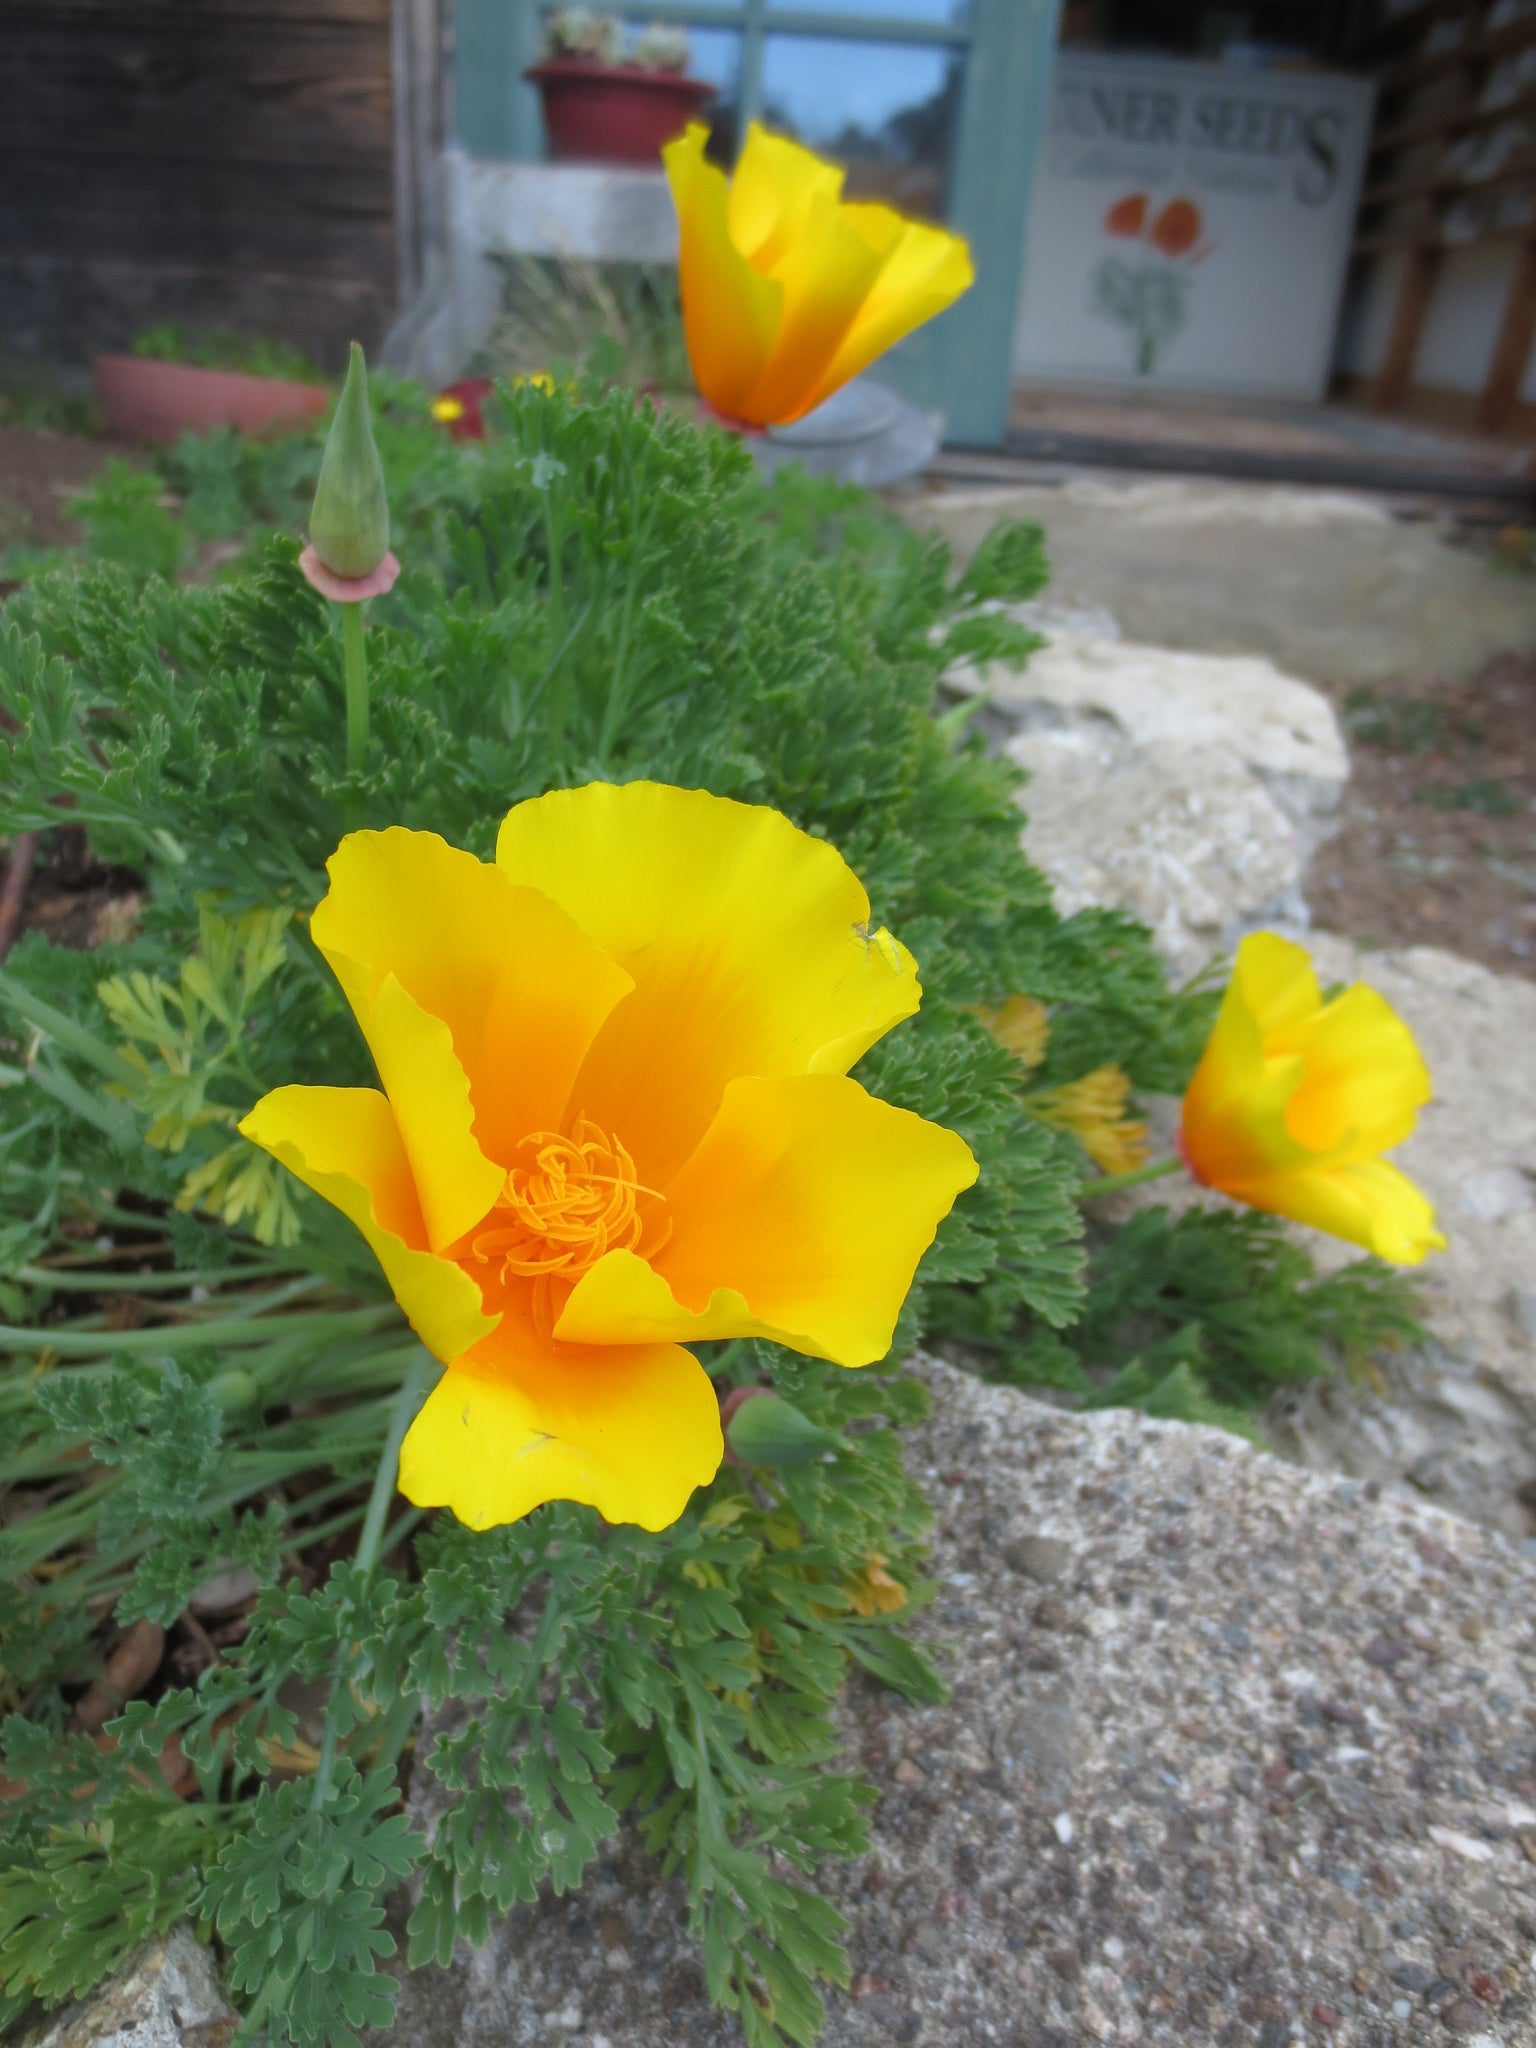 California Poppy (Eschscholzia californica)